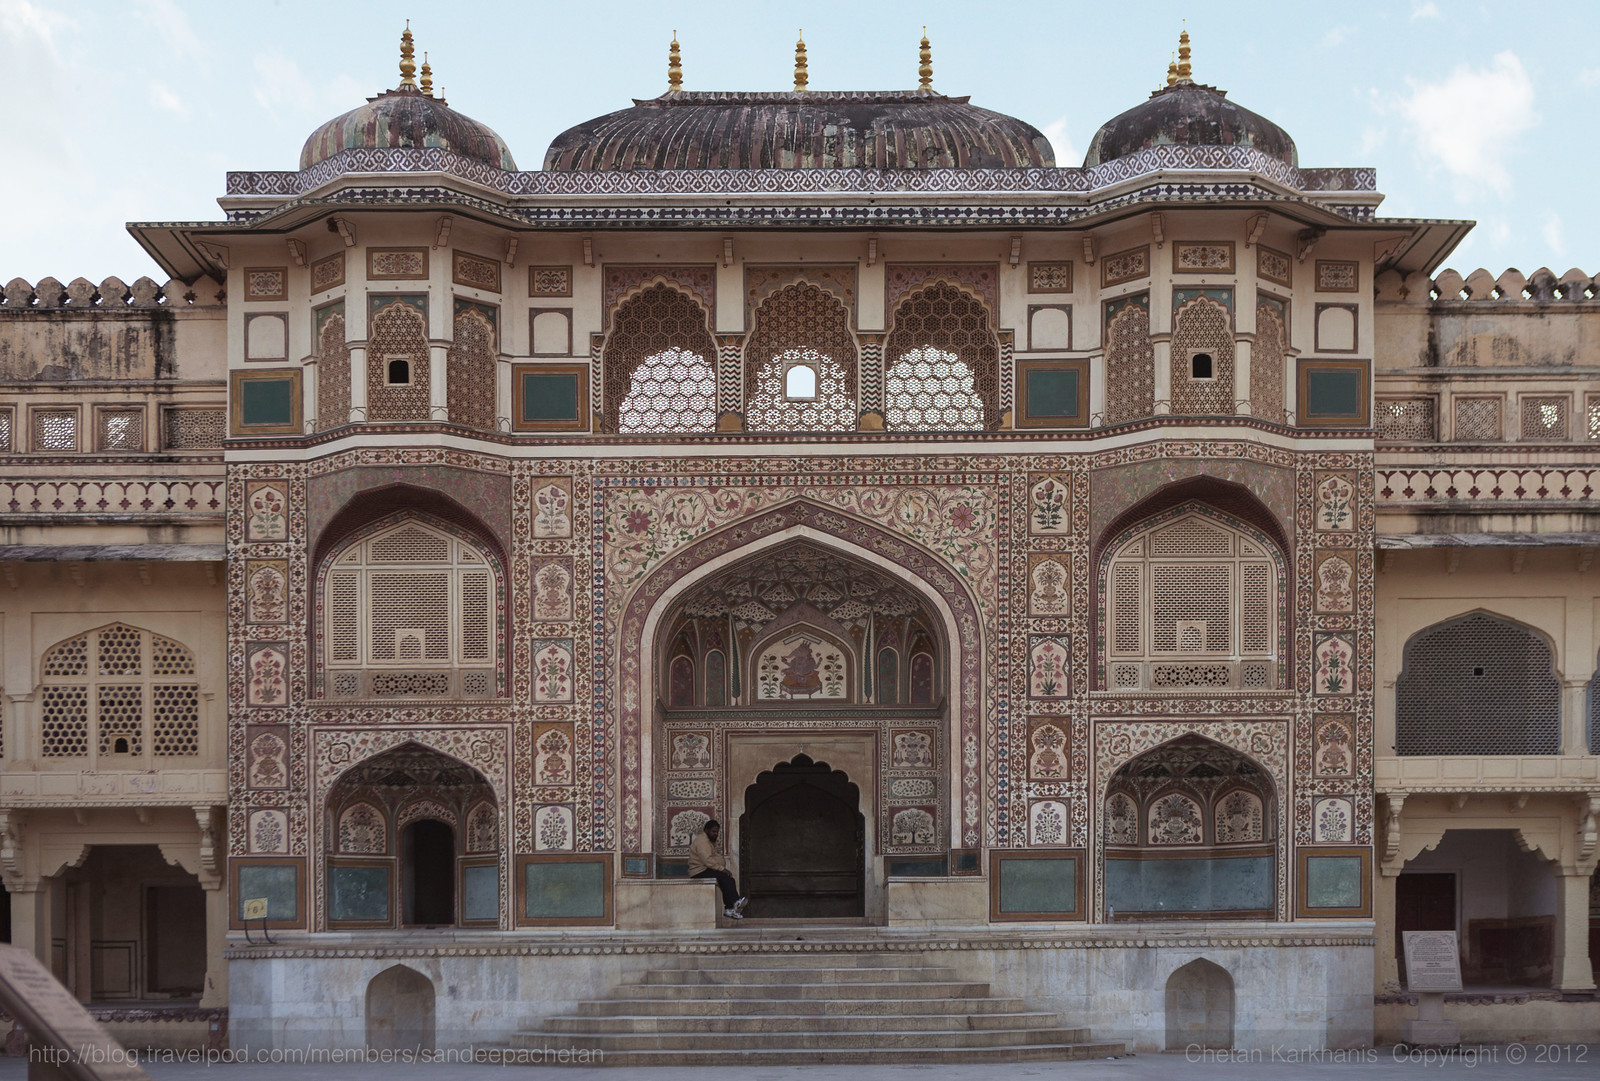 Ganesh Pol, Amber Palace, Jaipur, India